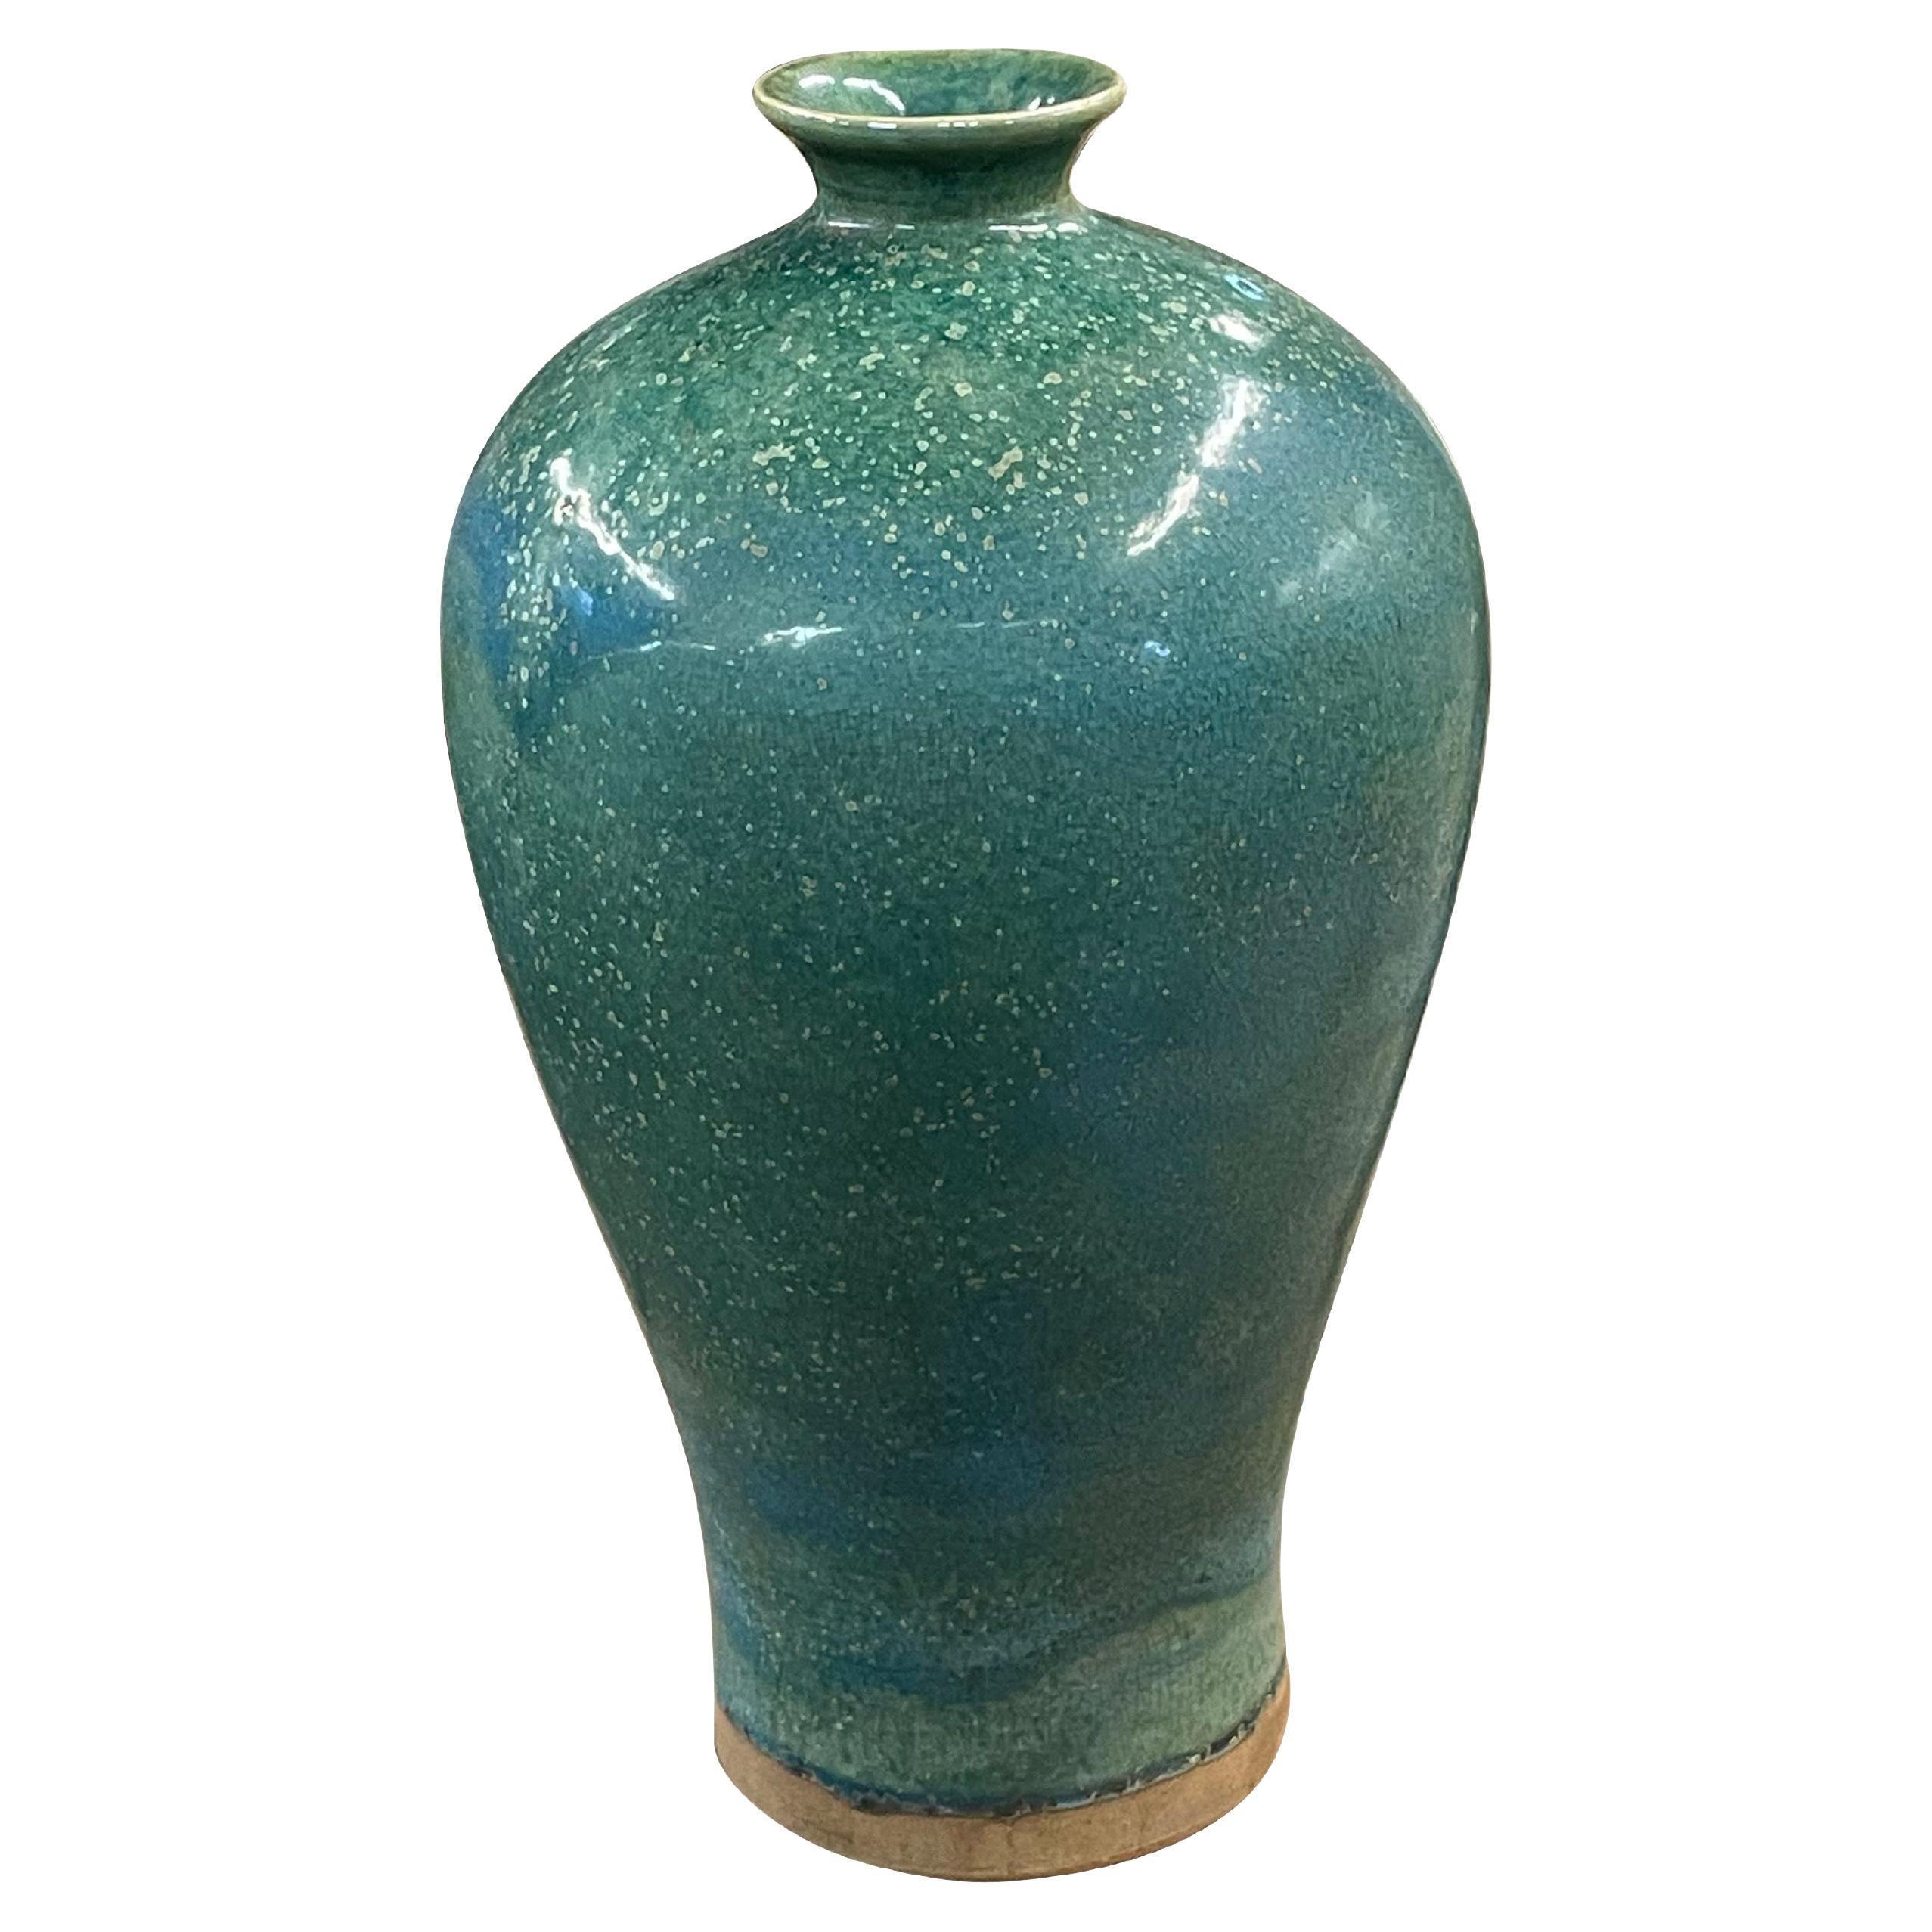 Zeitgenössische chinesische türkisfarbene Keramikvase mit dekorativer gesprenkelter Glasur.
Kann Wasser aufnehmen.
Teil einer großen Sammlung.